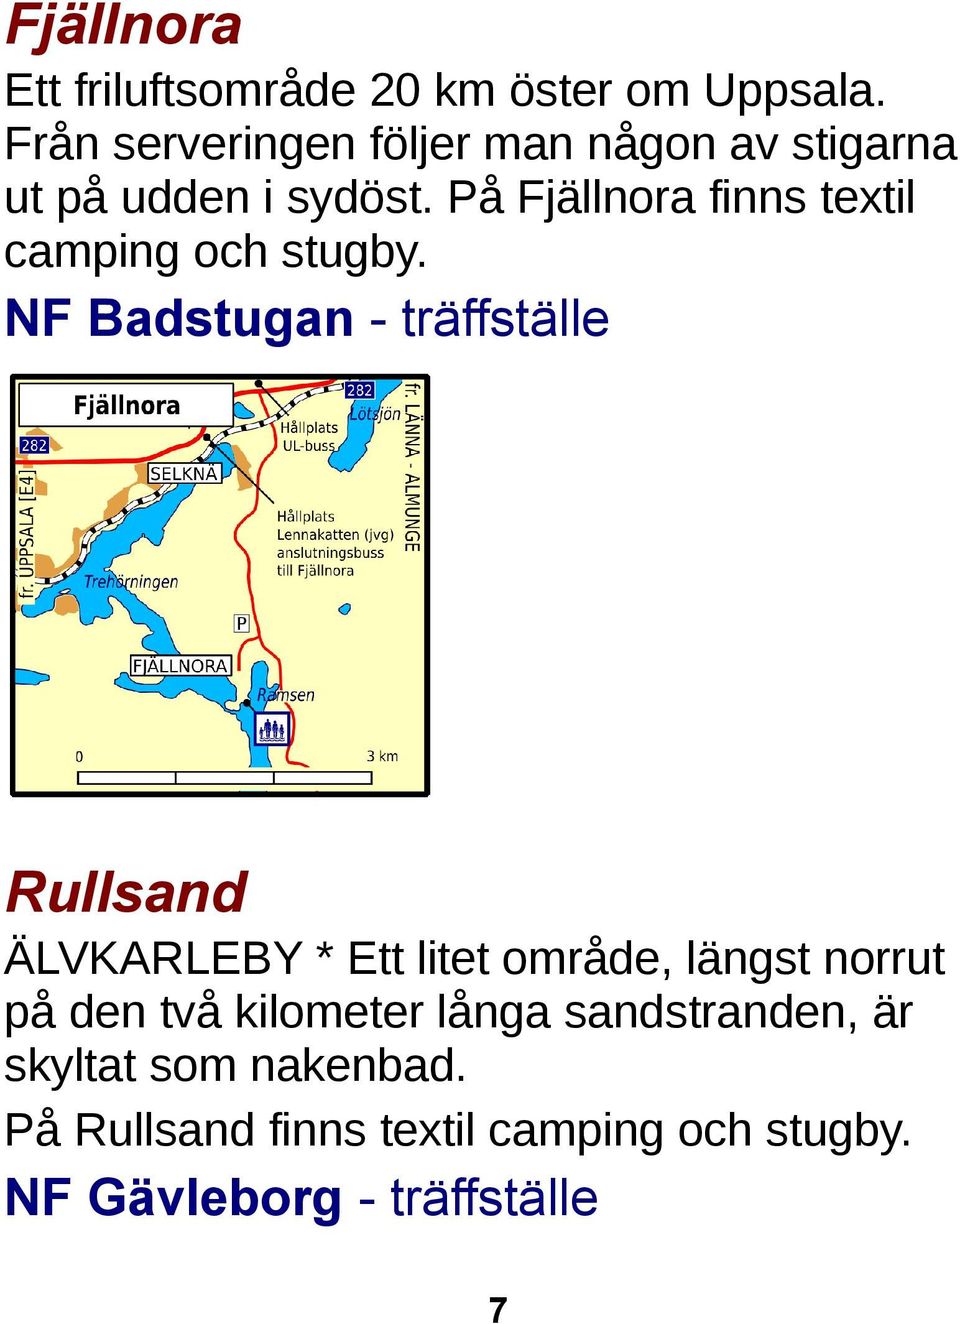 På Fjällnora finns textil camping och stugby.